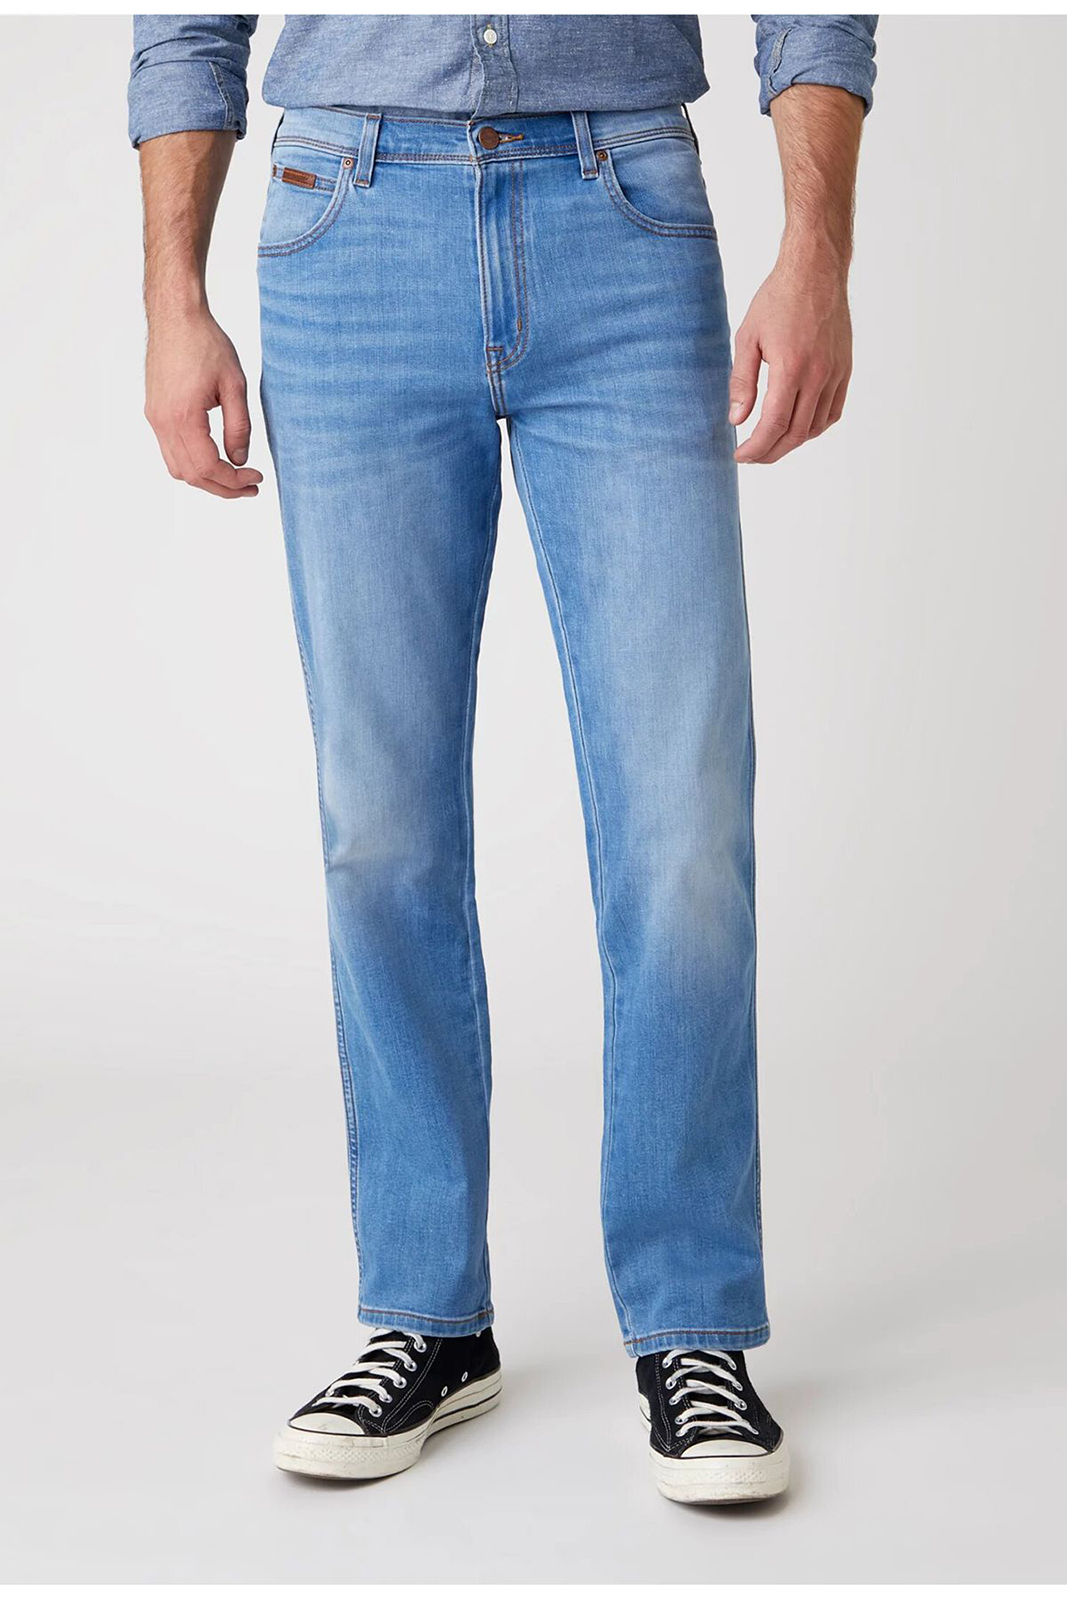 фото Джинсы мужские wrangler men texas heat rage jeans синие 30/32